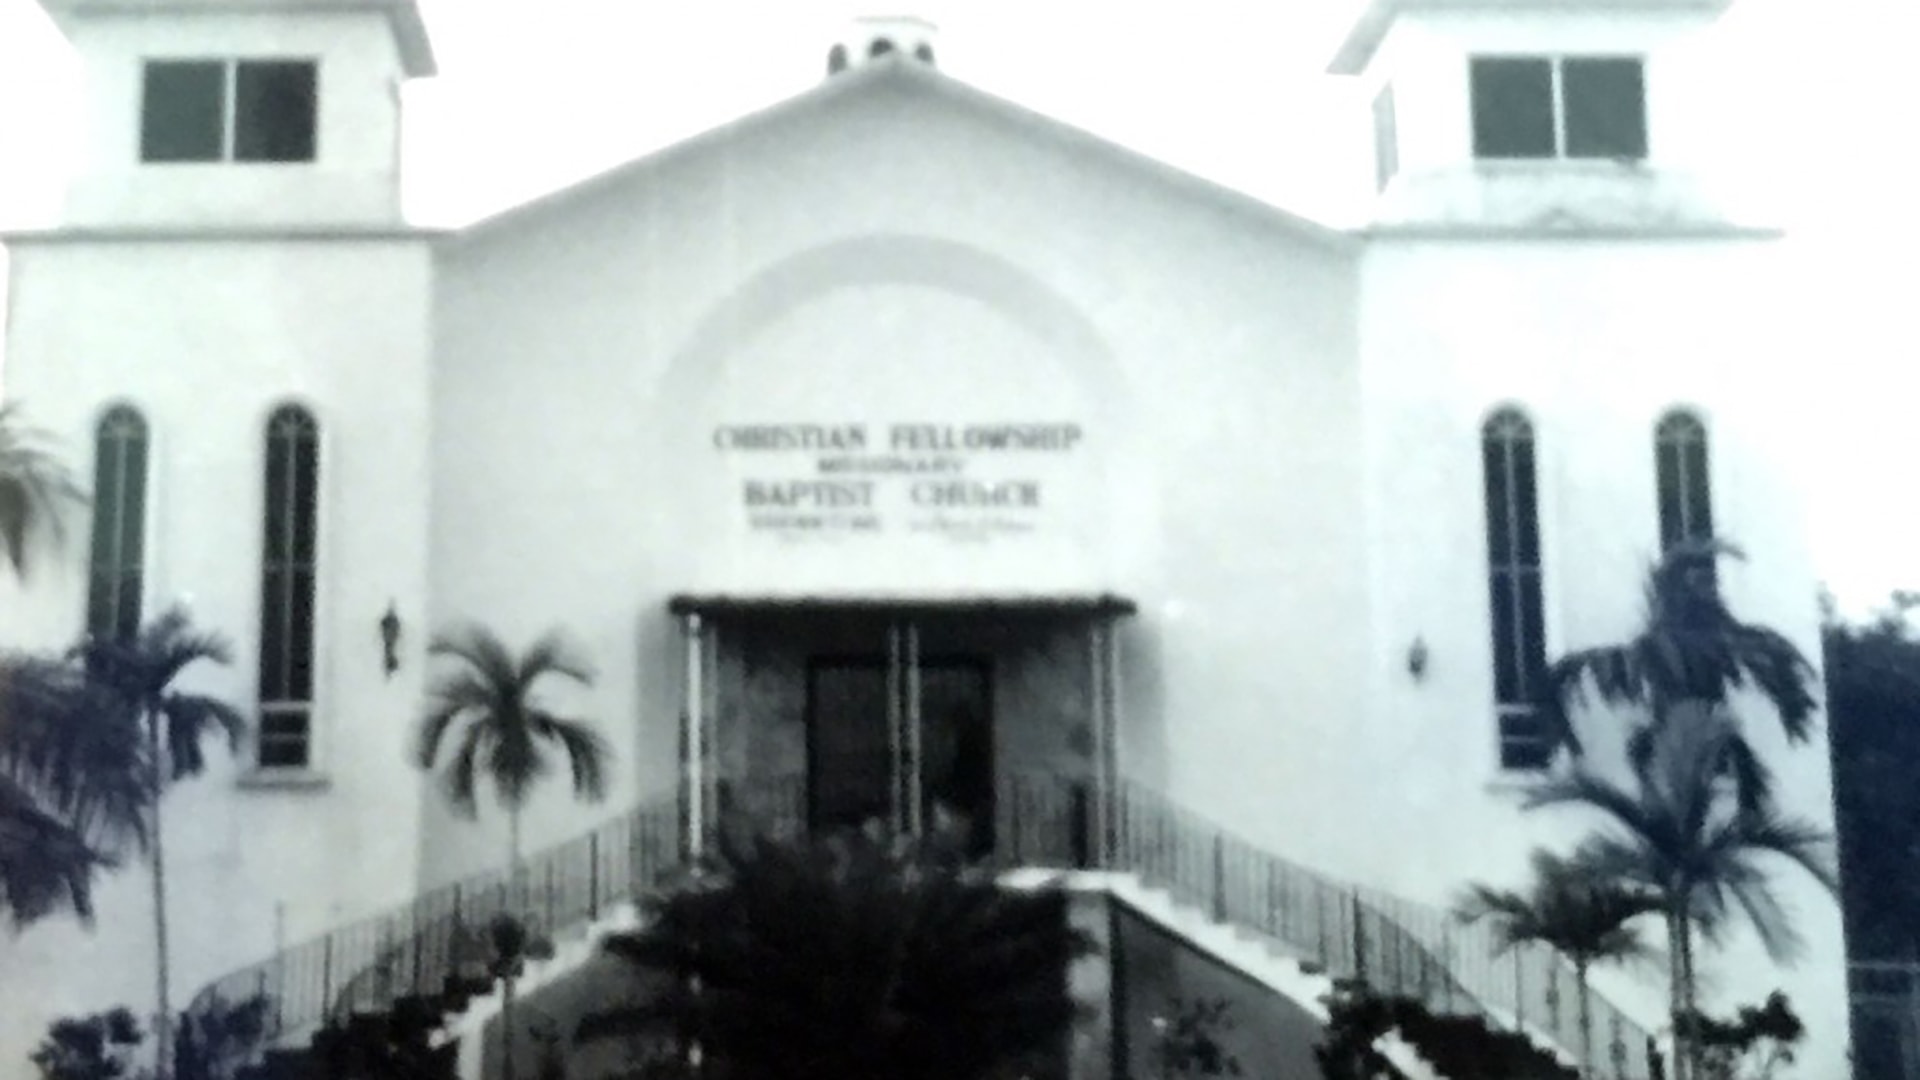 Christian Fellowship Missionary Baptist Church